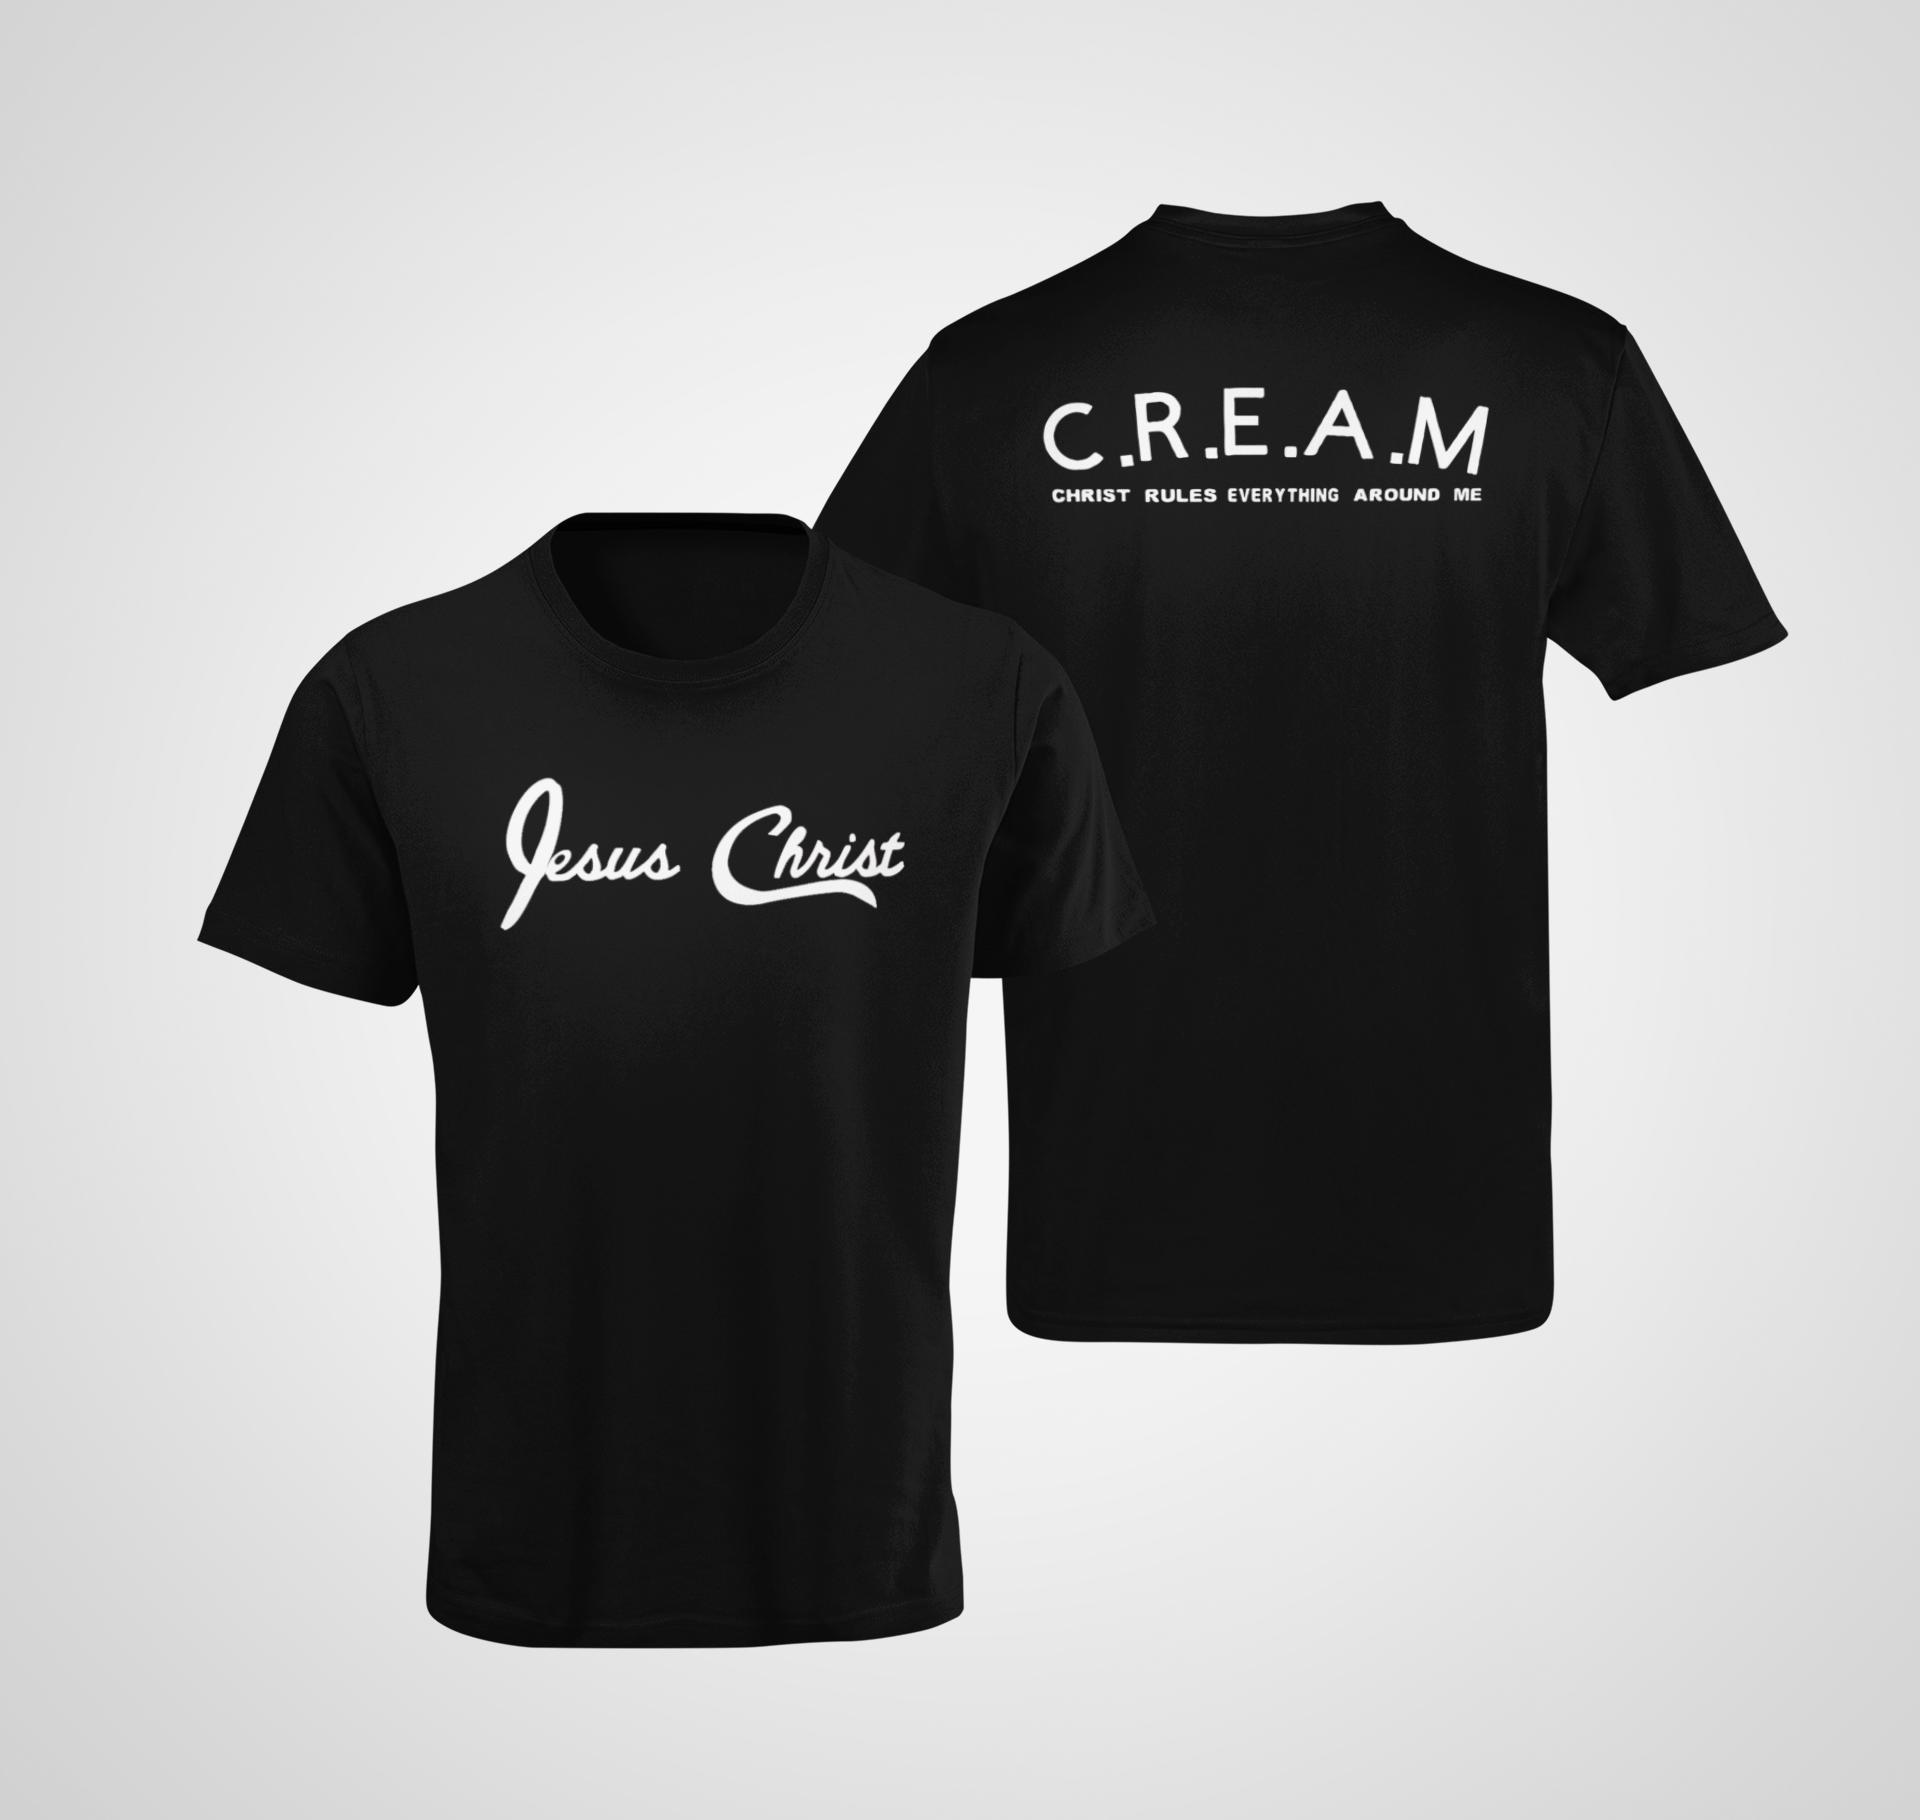 Jesus Christ/CREAM T-Shirt